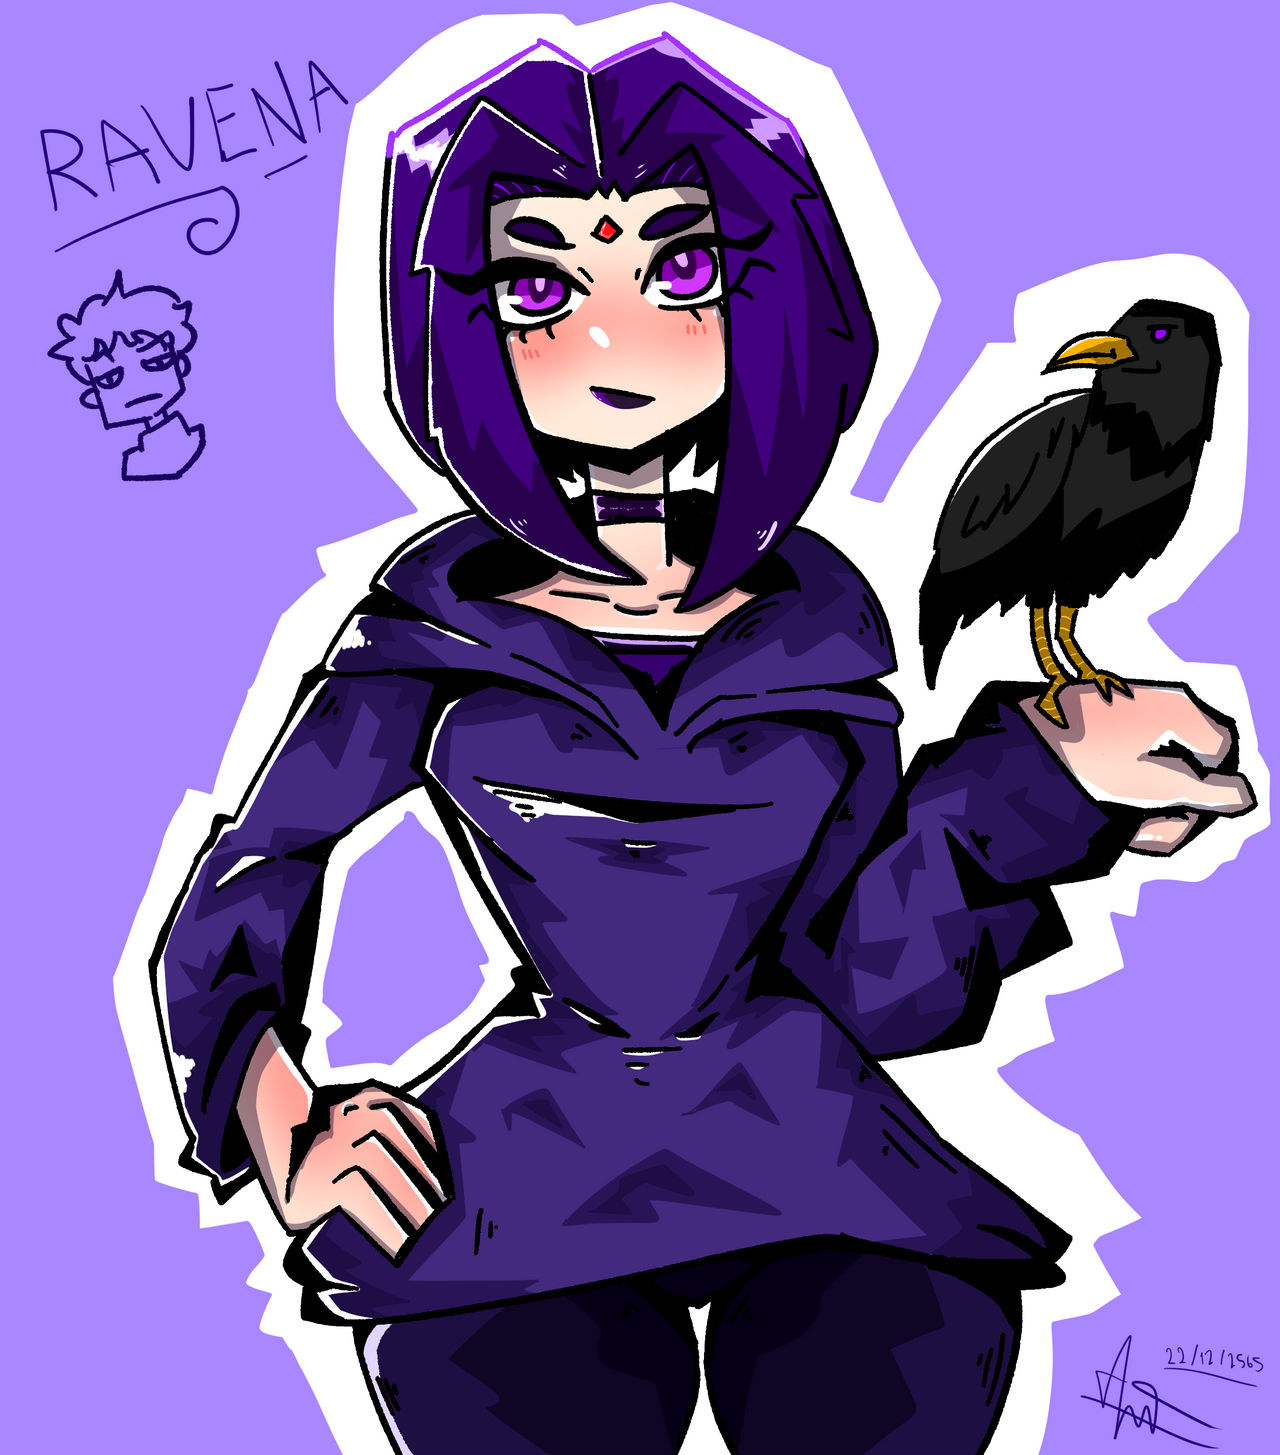 Ravena by Patiew on DeviantArt